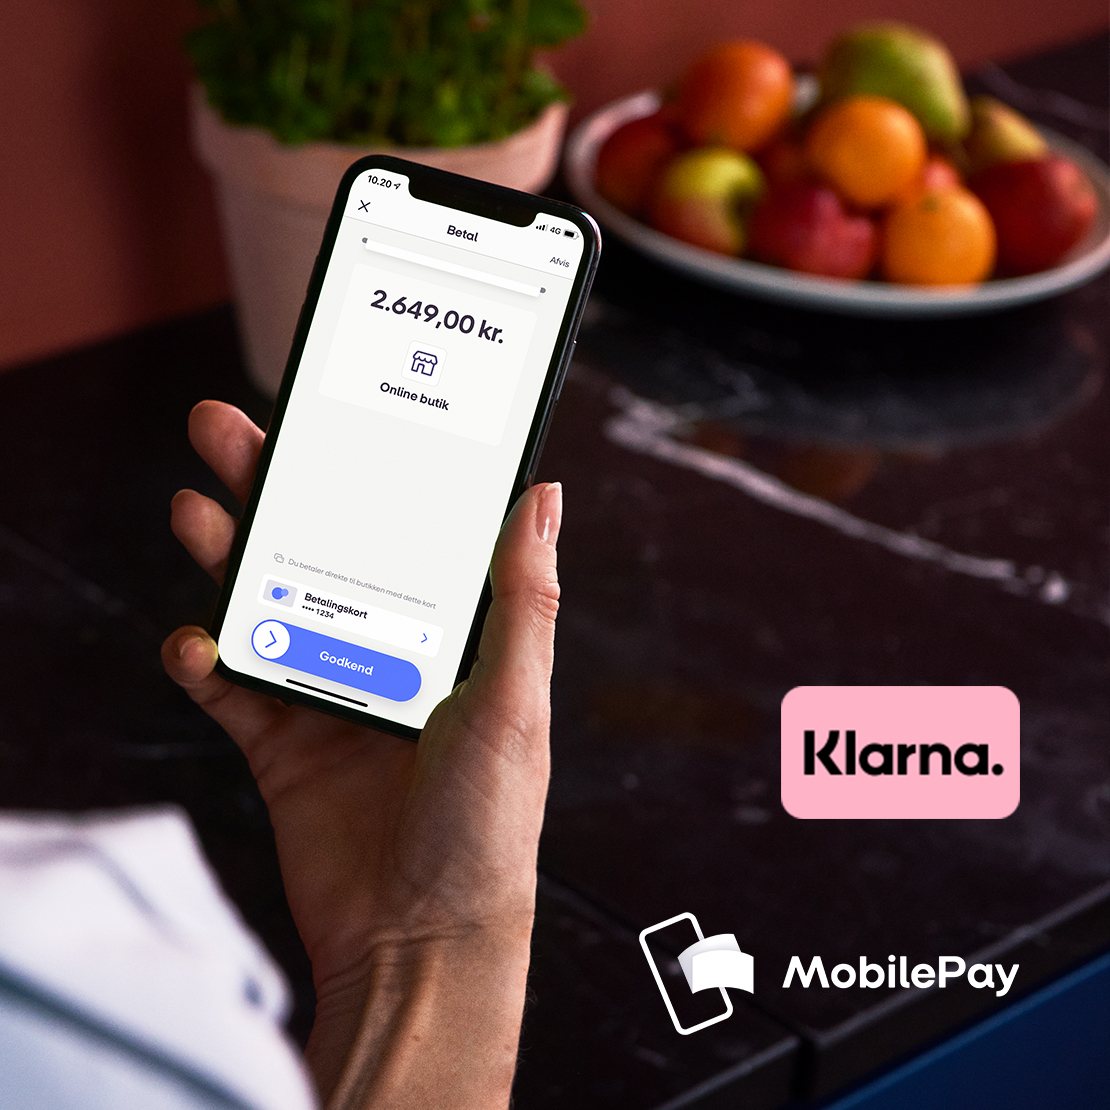 Billede til nyheden "MobilePay to enter partnership with Klarna".